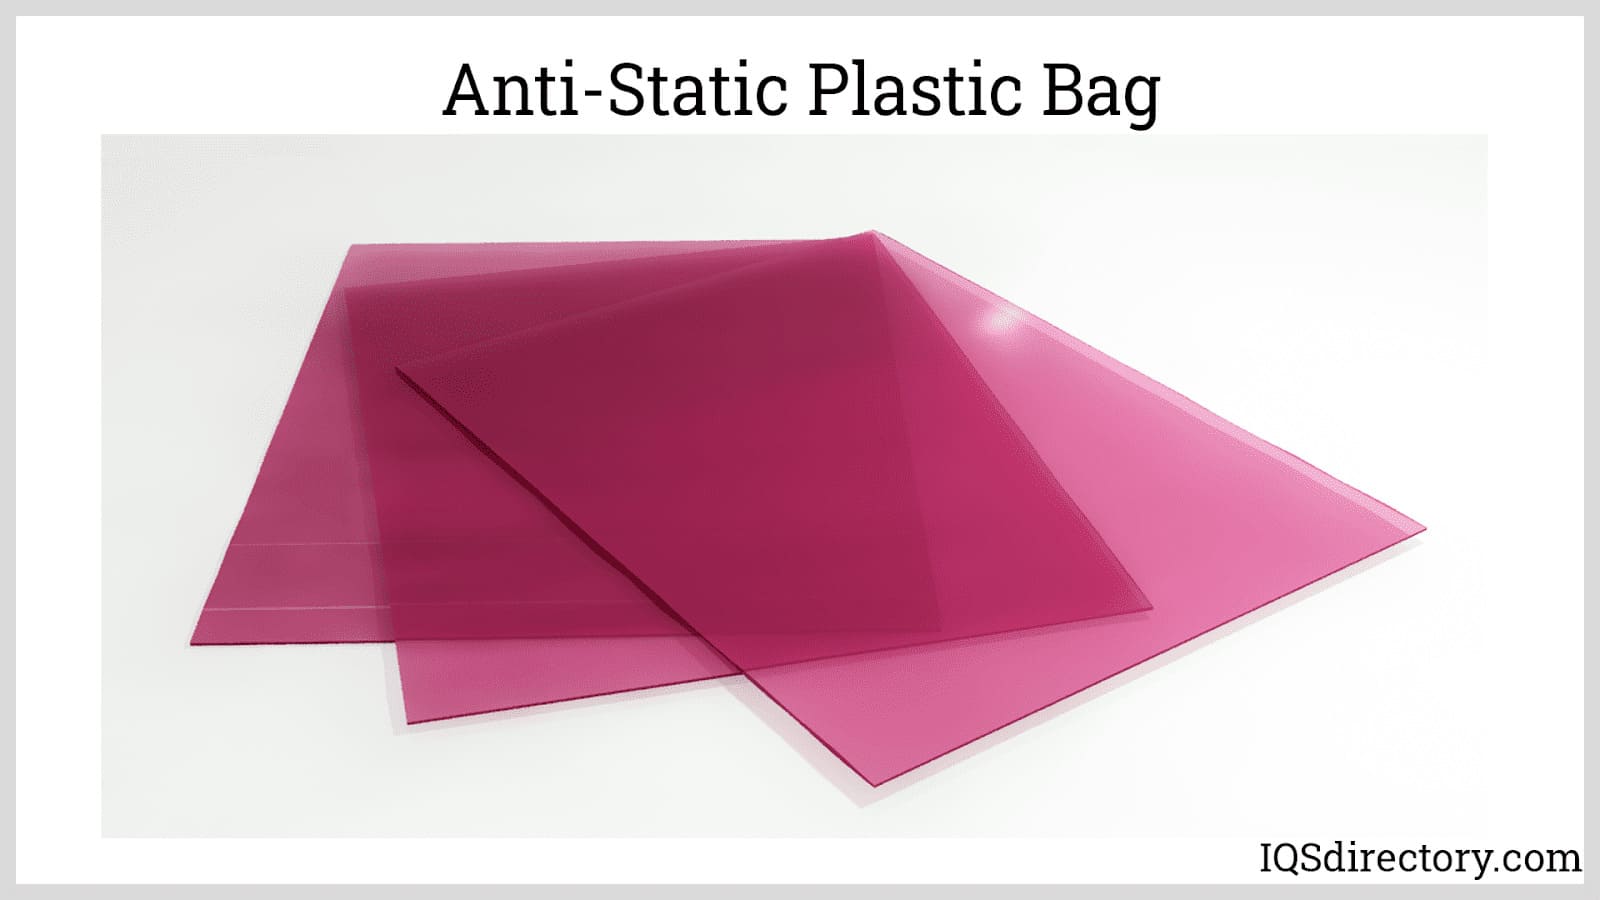 Anti-Static Plastic Bag